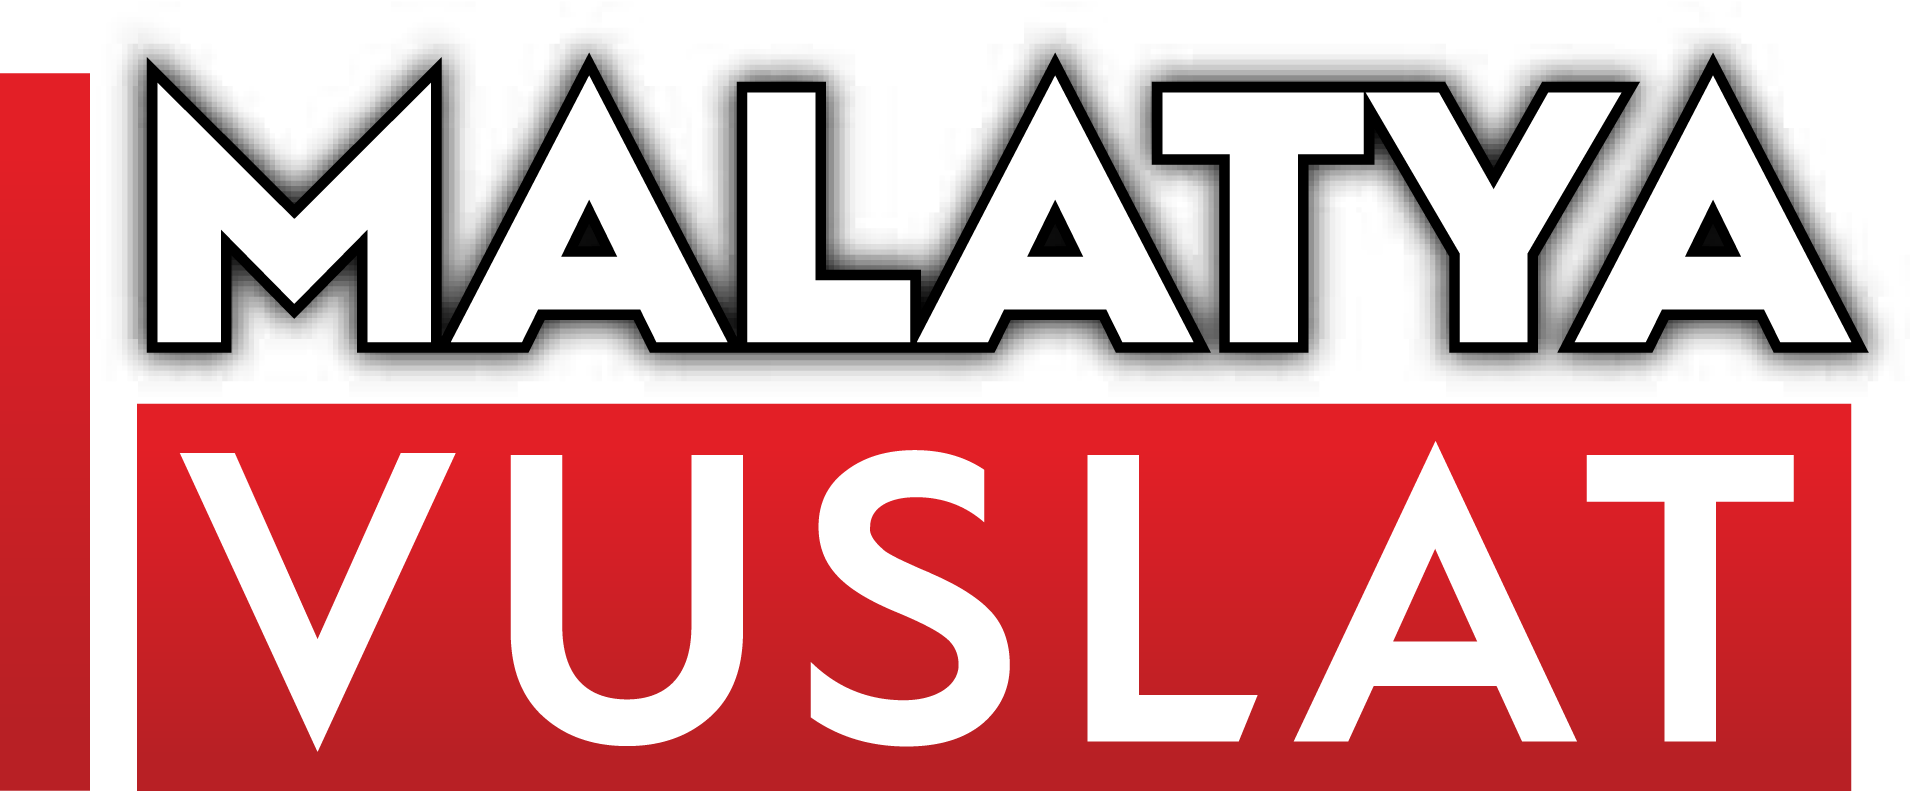 Malatya'da 4 Büyüklüğünde Deprem! haber, malatya haber, vuslat haber